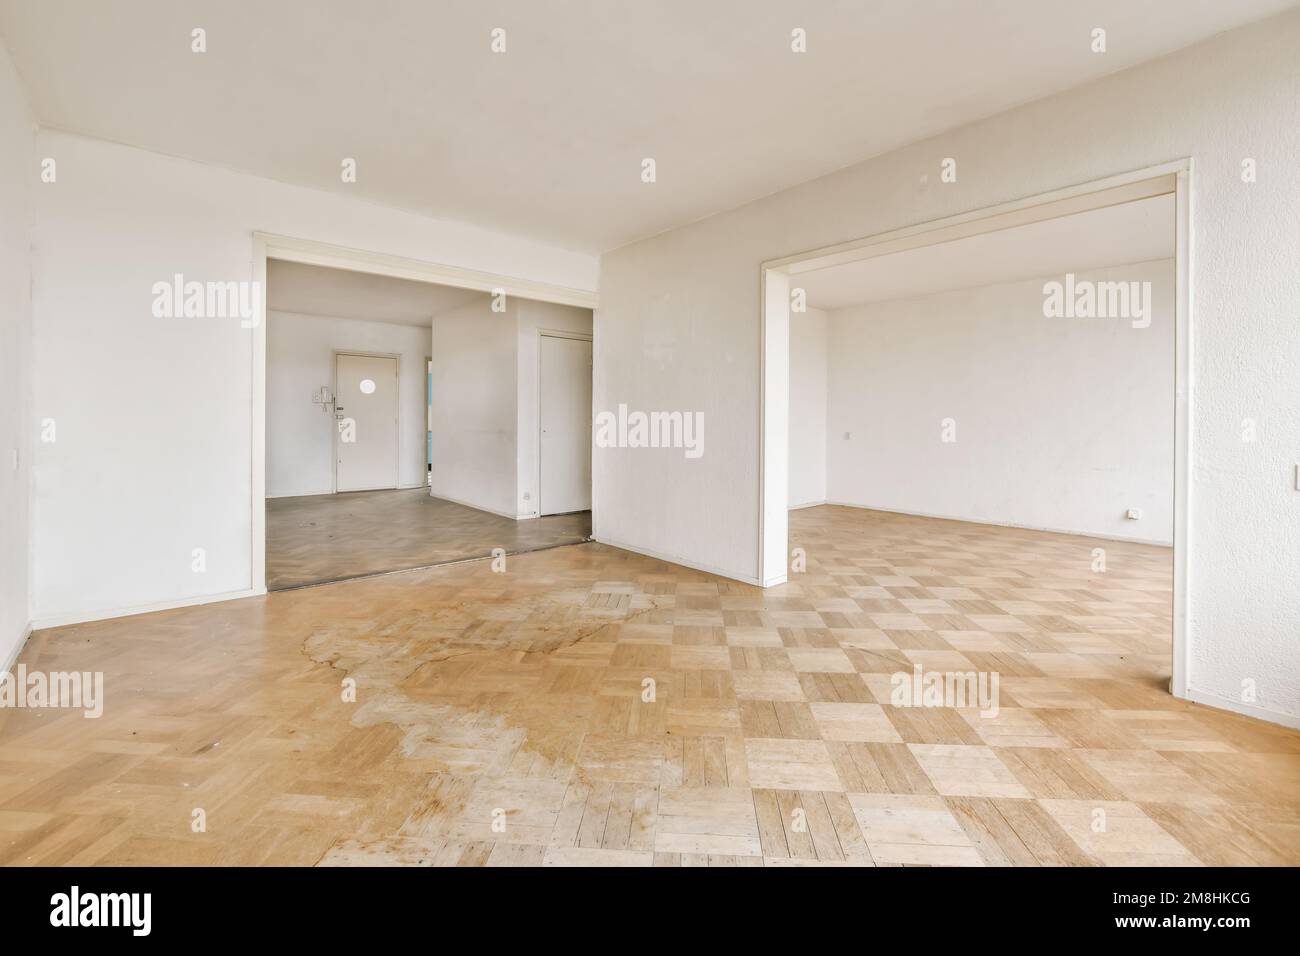 Ein leeres Zimmer mit weißen Wänden und Holzfußboden im mittleren Teil des Zimmers, es gibt keine Möbel Stockfoto